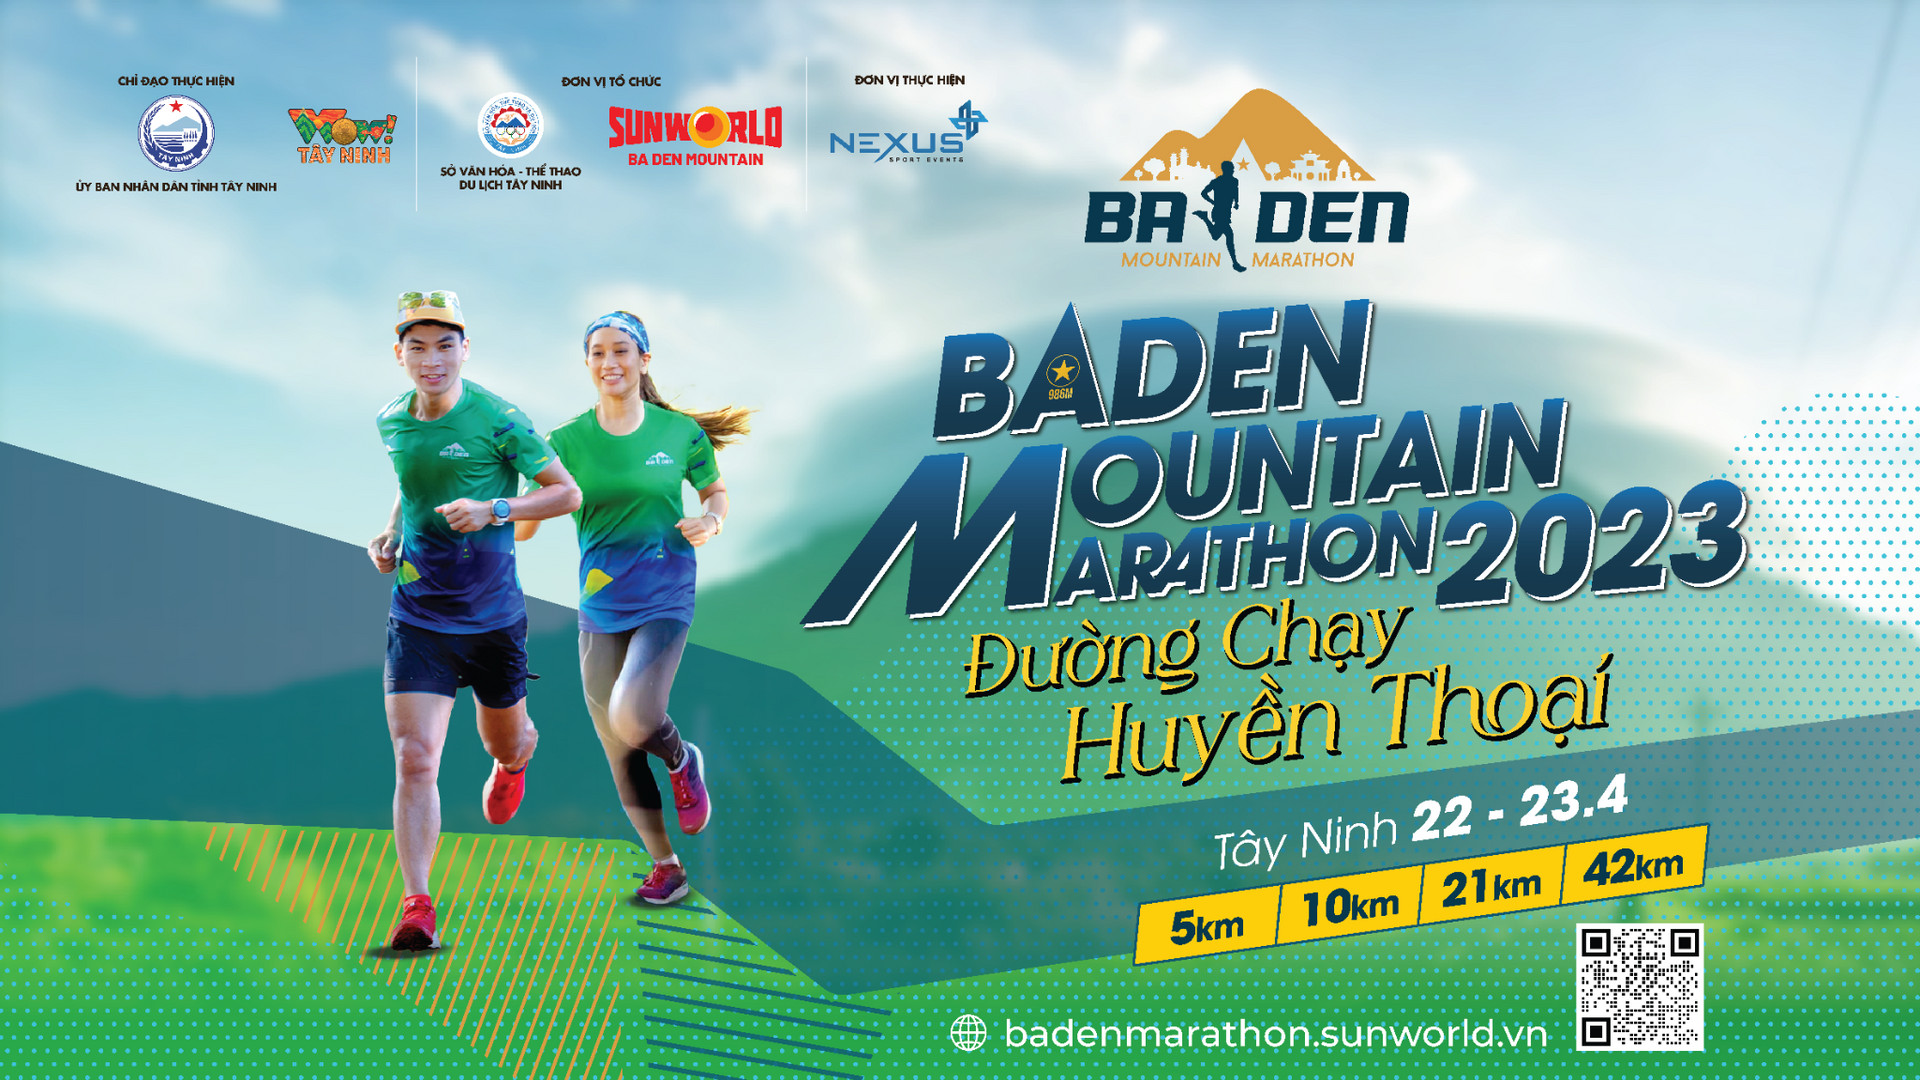 Thanh Vũ và Trọng Nhơn là đại sứ của giải chạy BaDen Mountain Marathon 2023.